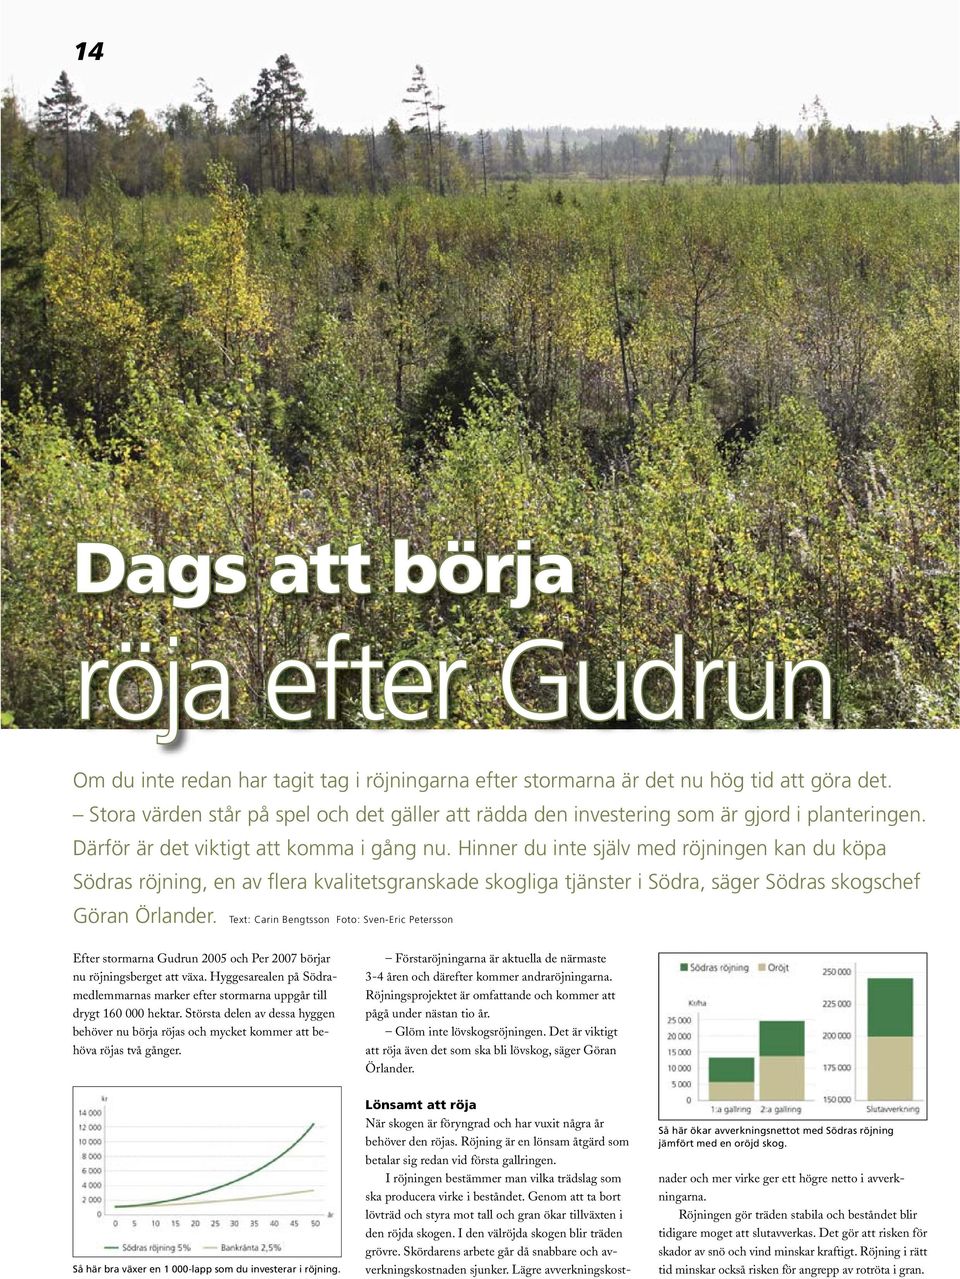 Hinner du inte själv med röjningen kan du köpa Södras röjning, en av flera kvalitetsgranskade skogliga tjänster i Södra, säger Södras skogschef Göran Örlander.